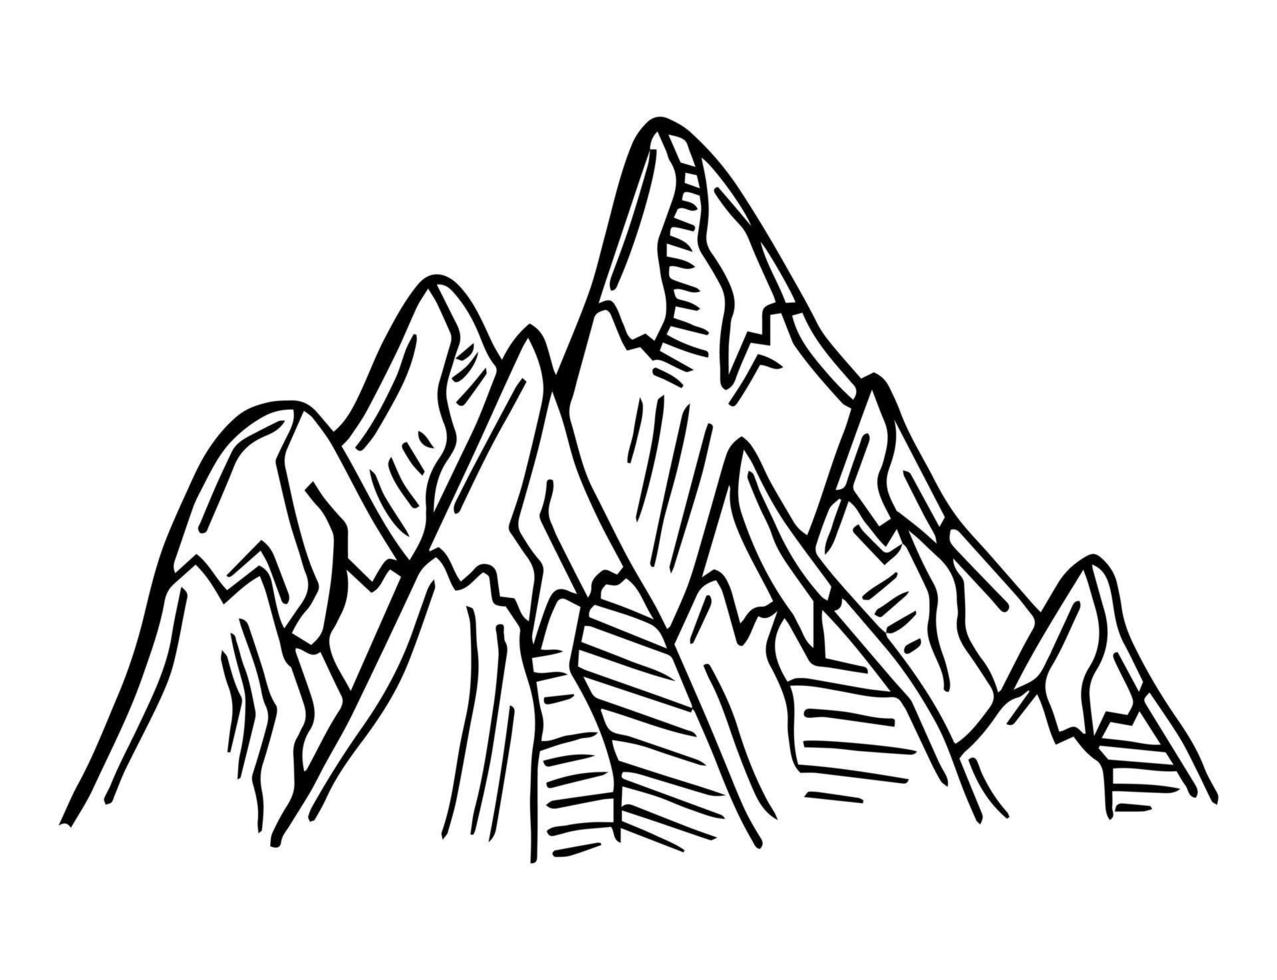 montagna vettore illustrazione, paesaggio maturo silhouette elemento all'aperto icona neve ghiaccio cime e decorativo isolato campeggio viaggio arrampicata o escursionismo.